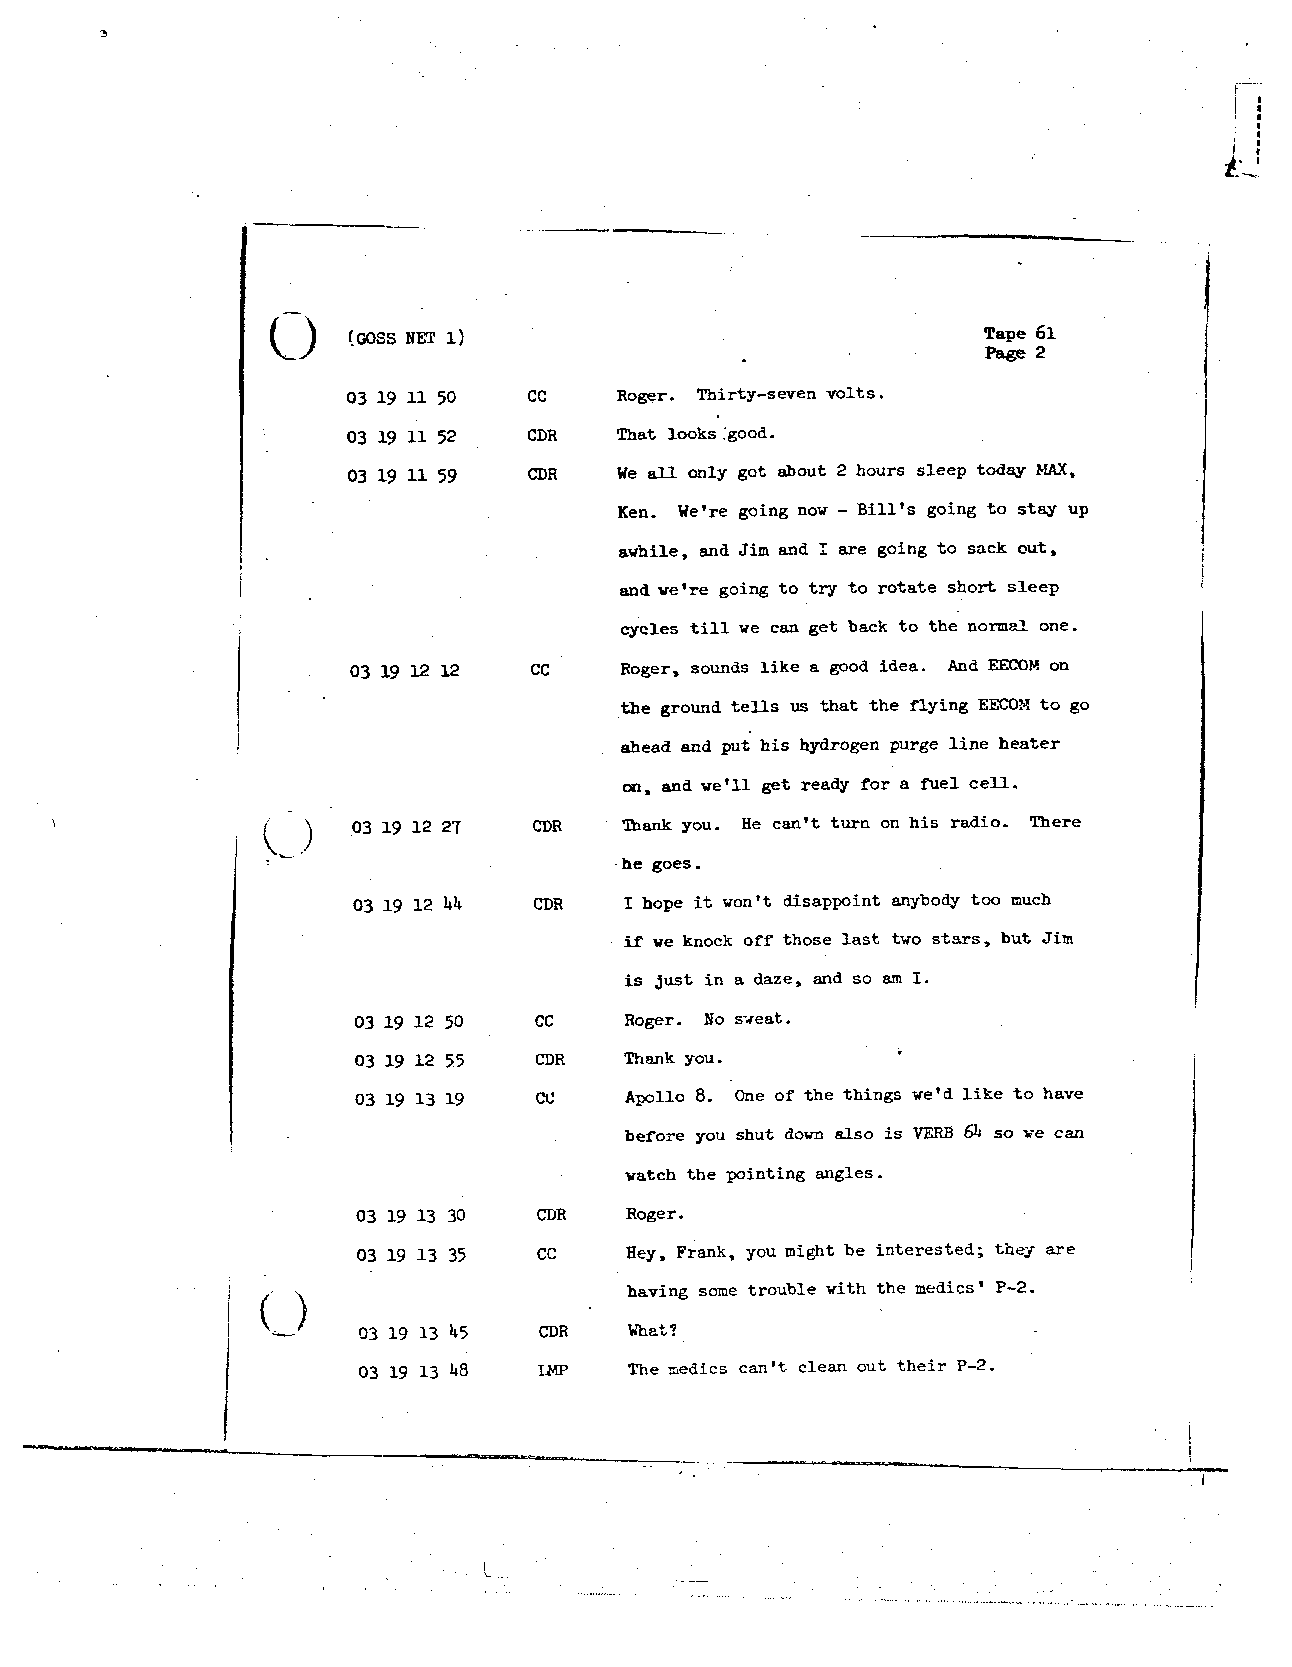 Page 486 of Apollo 8’s original transcript